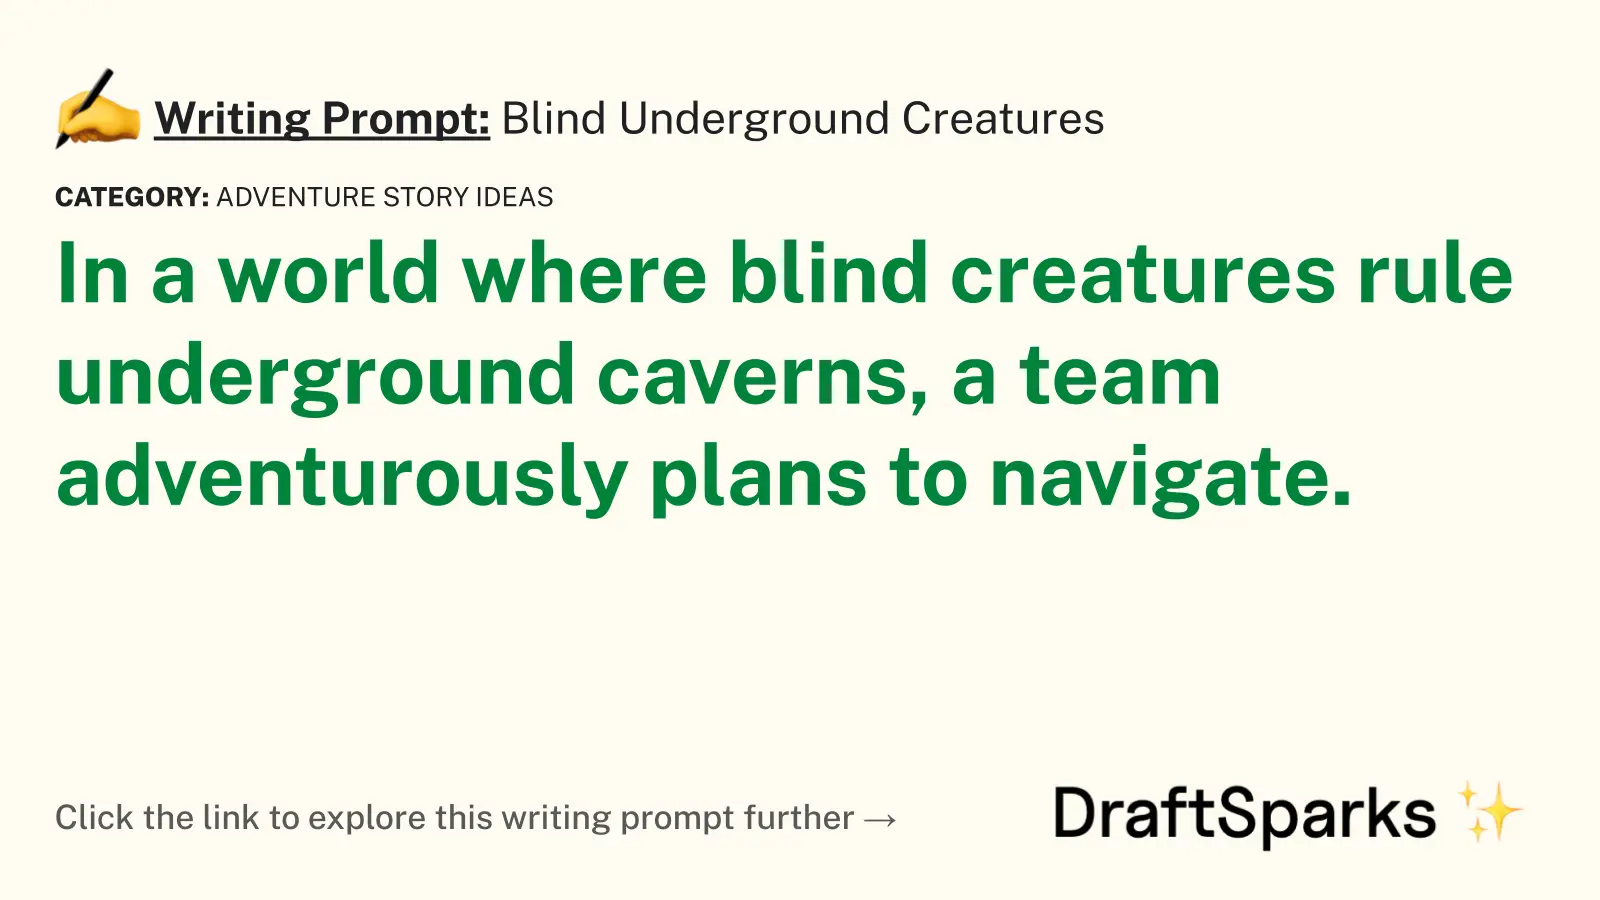 Blind Underground Creatures